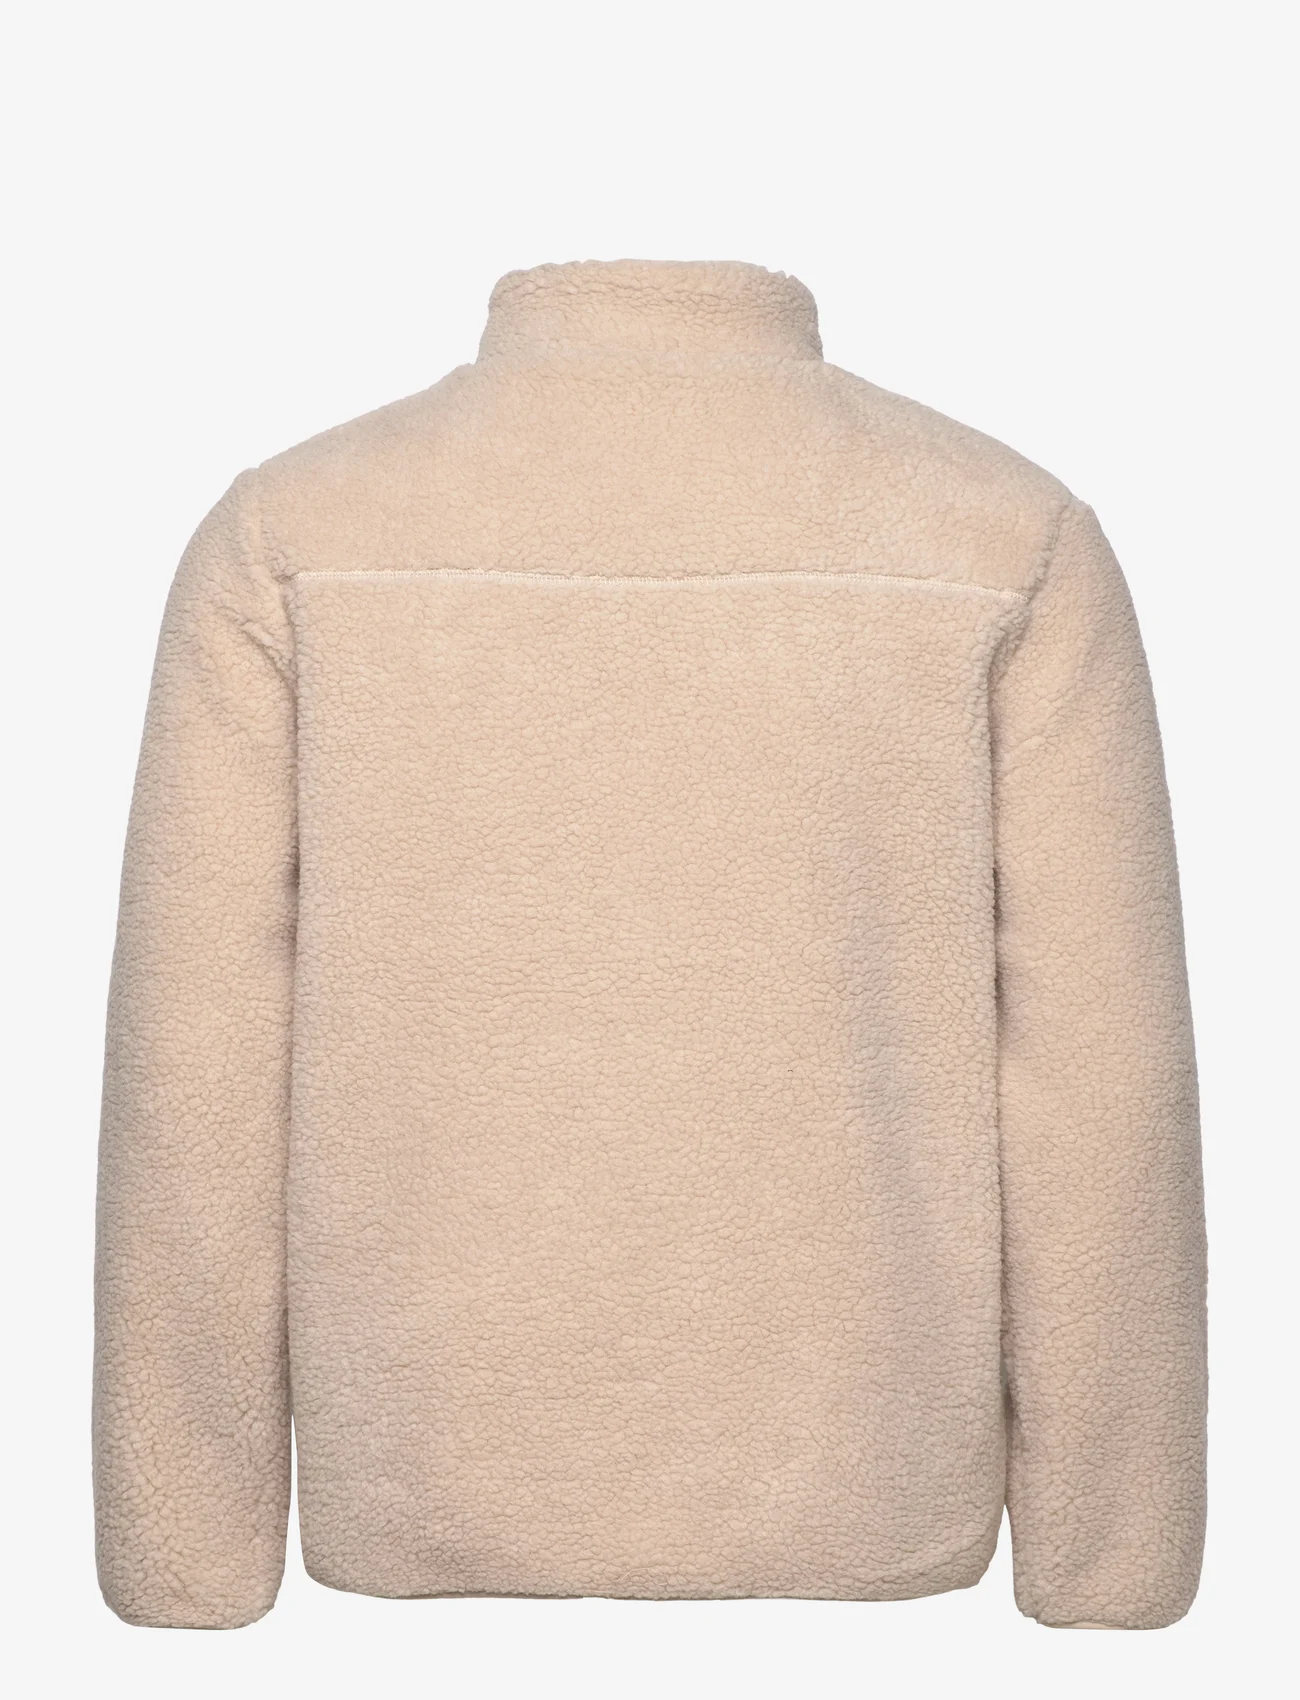 Knowledge Cotton Apparel - Teddy fleece zip sweat - GRS/Vegan - sporta džemperi - item colour - 0